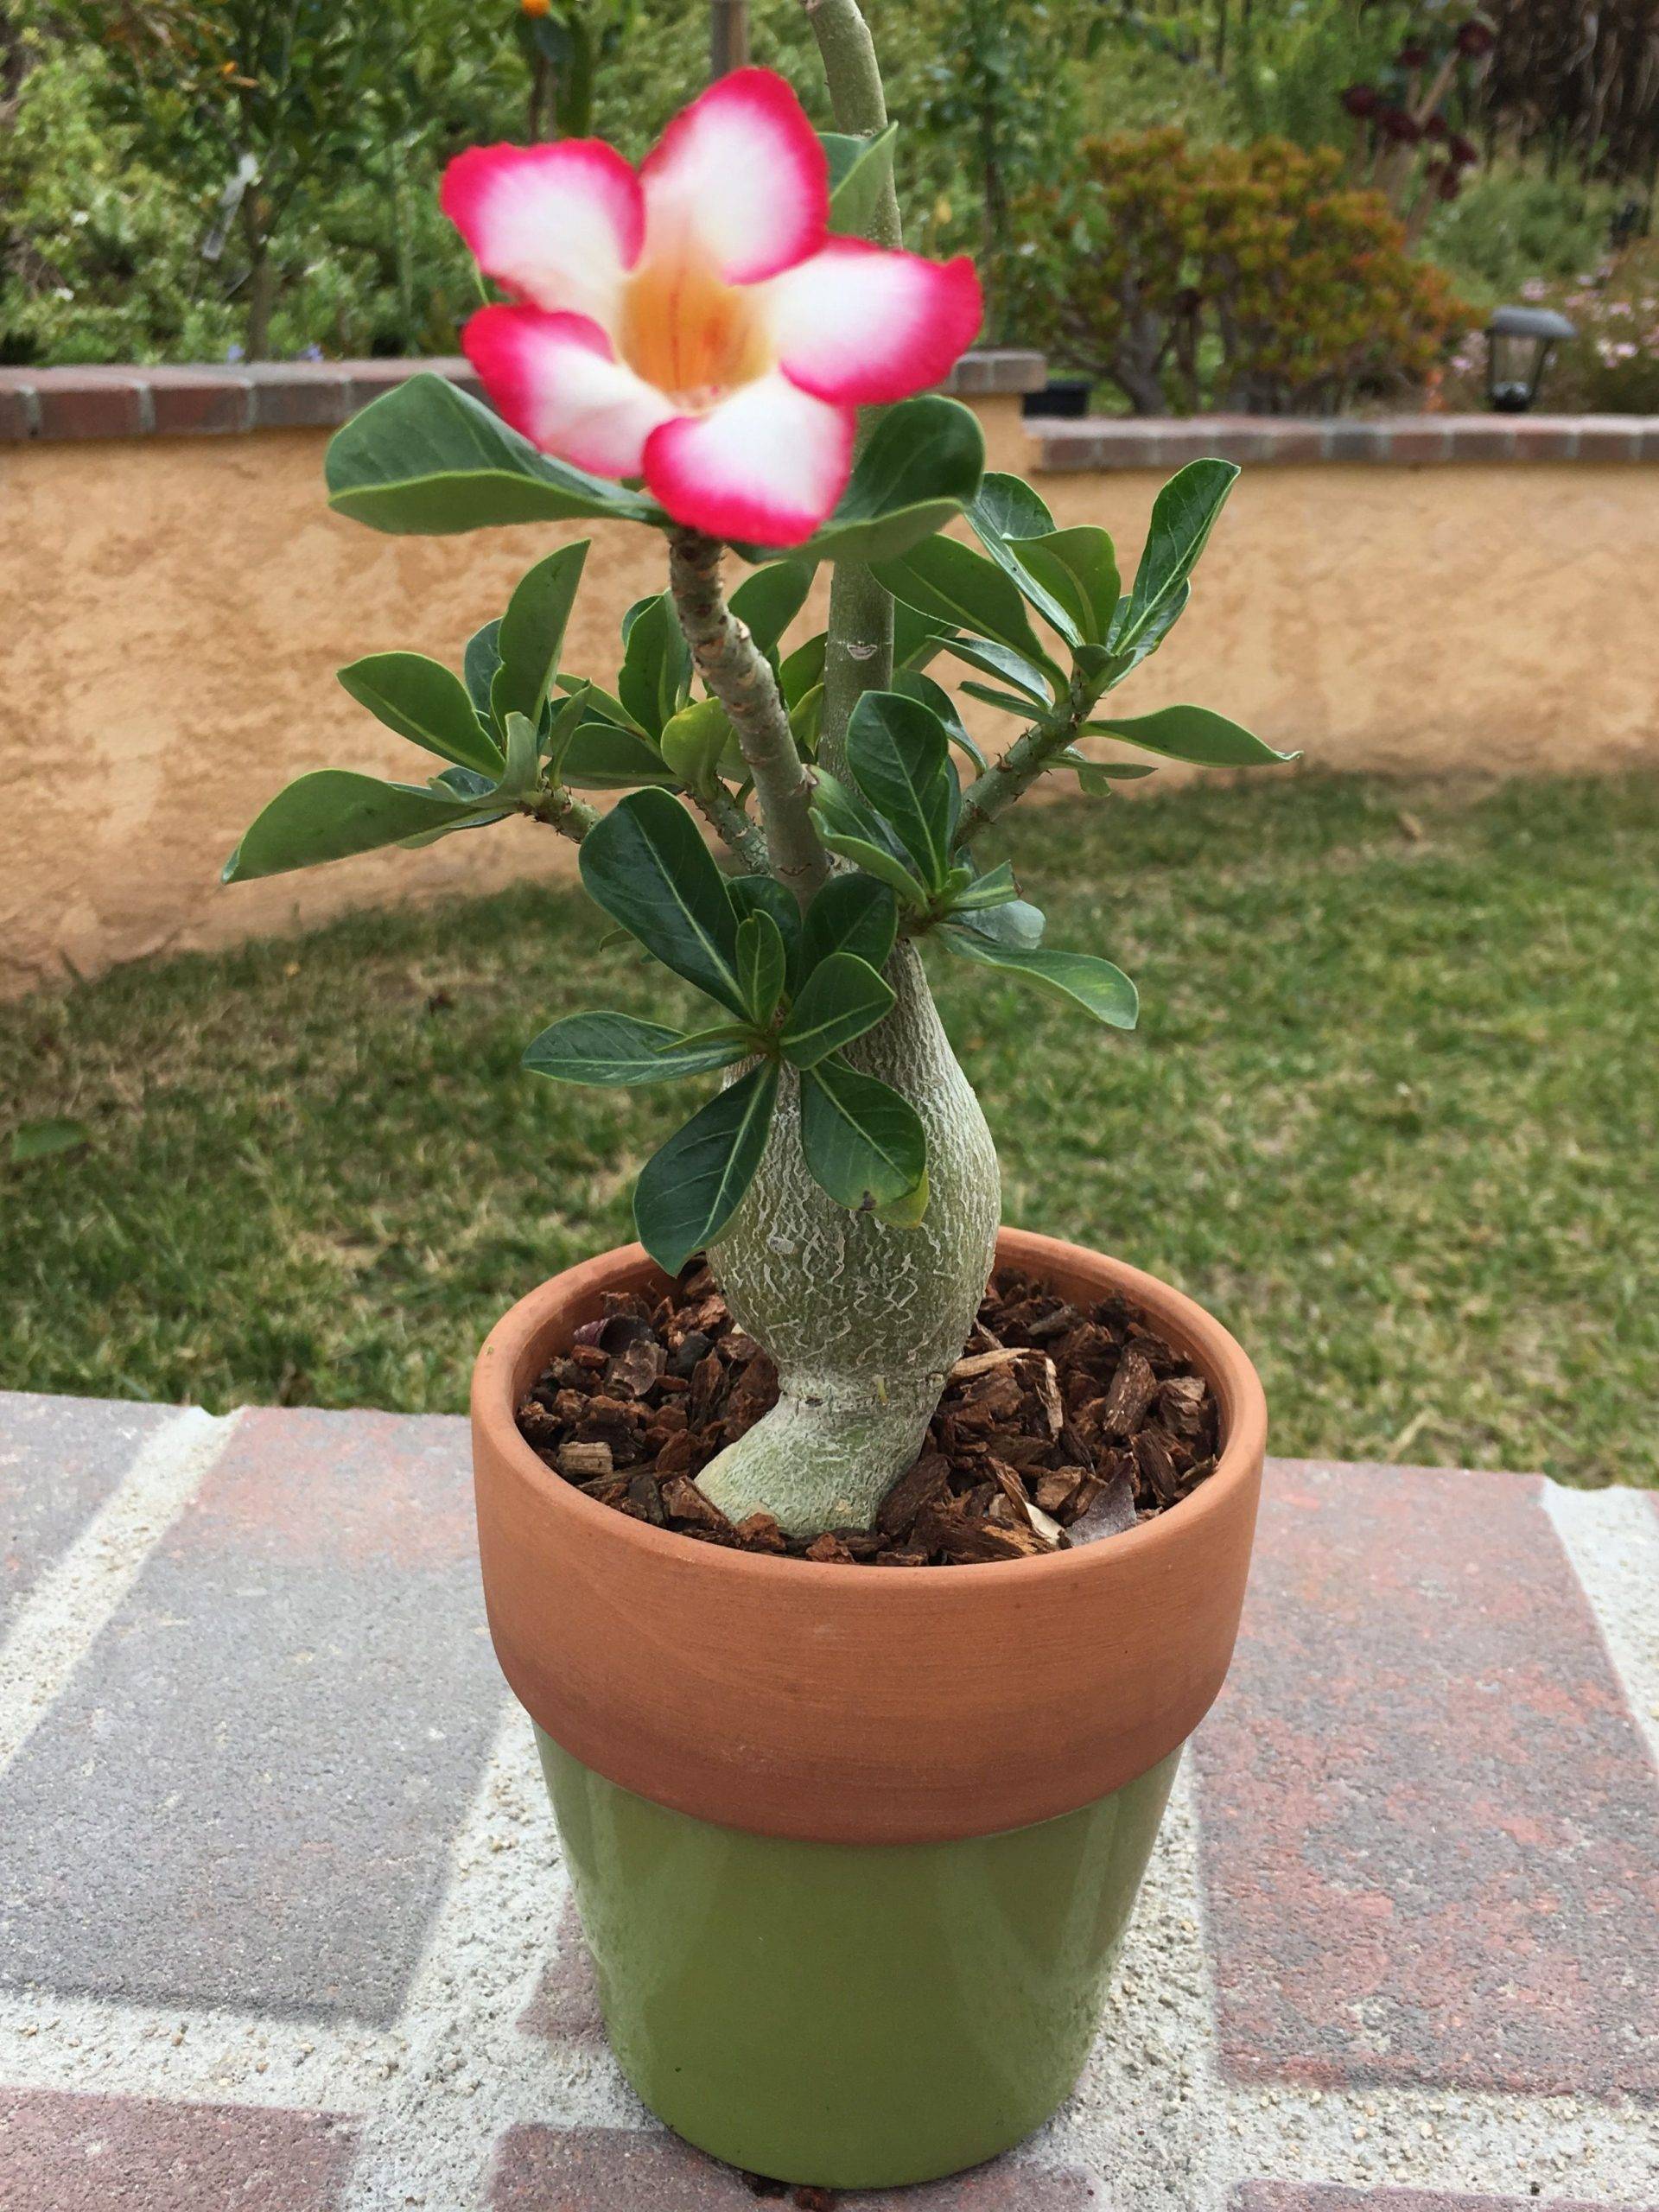 Адениум, или роза пустыни - самое красивое и неприхотливое растение для южных окон